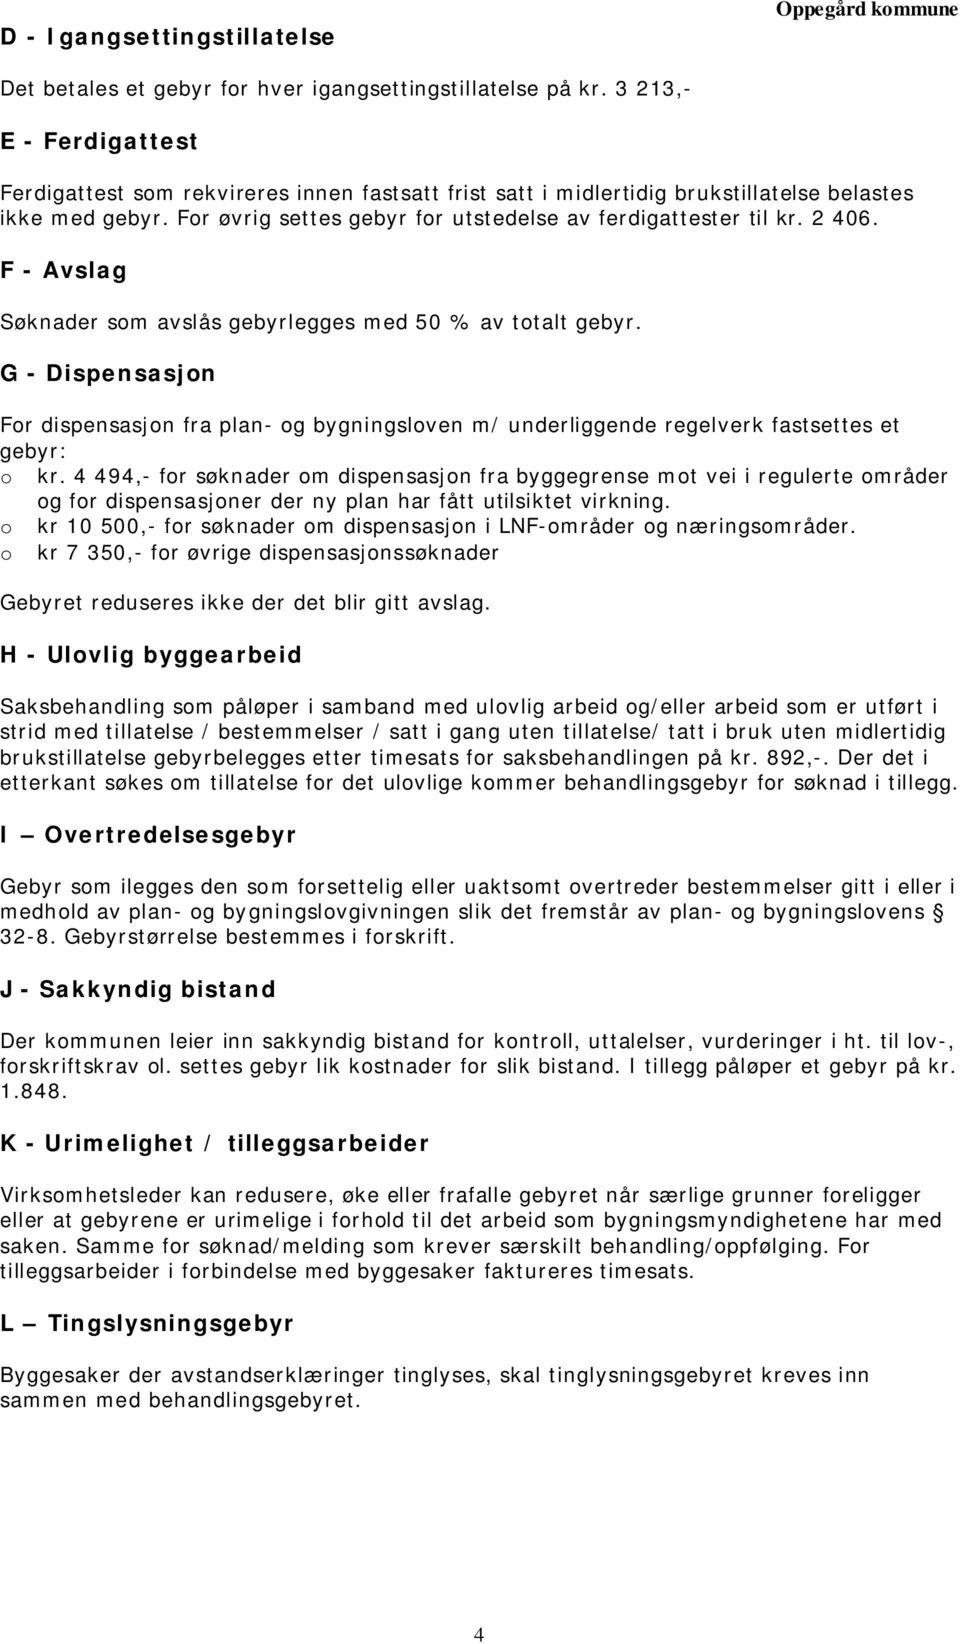 2 406. F - Avslag Søknader som avslås gebyrlegges med 50 % av totalt gebyr. G - Dispensasjon For dispensasjon fra plan- og bygningsloven m/ underliggende regelverk fastsettes et gebyr: o kr.